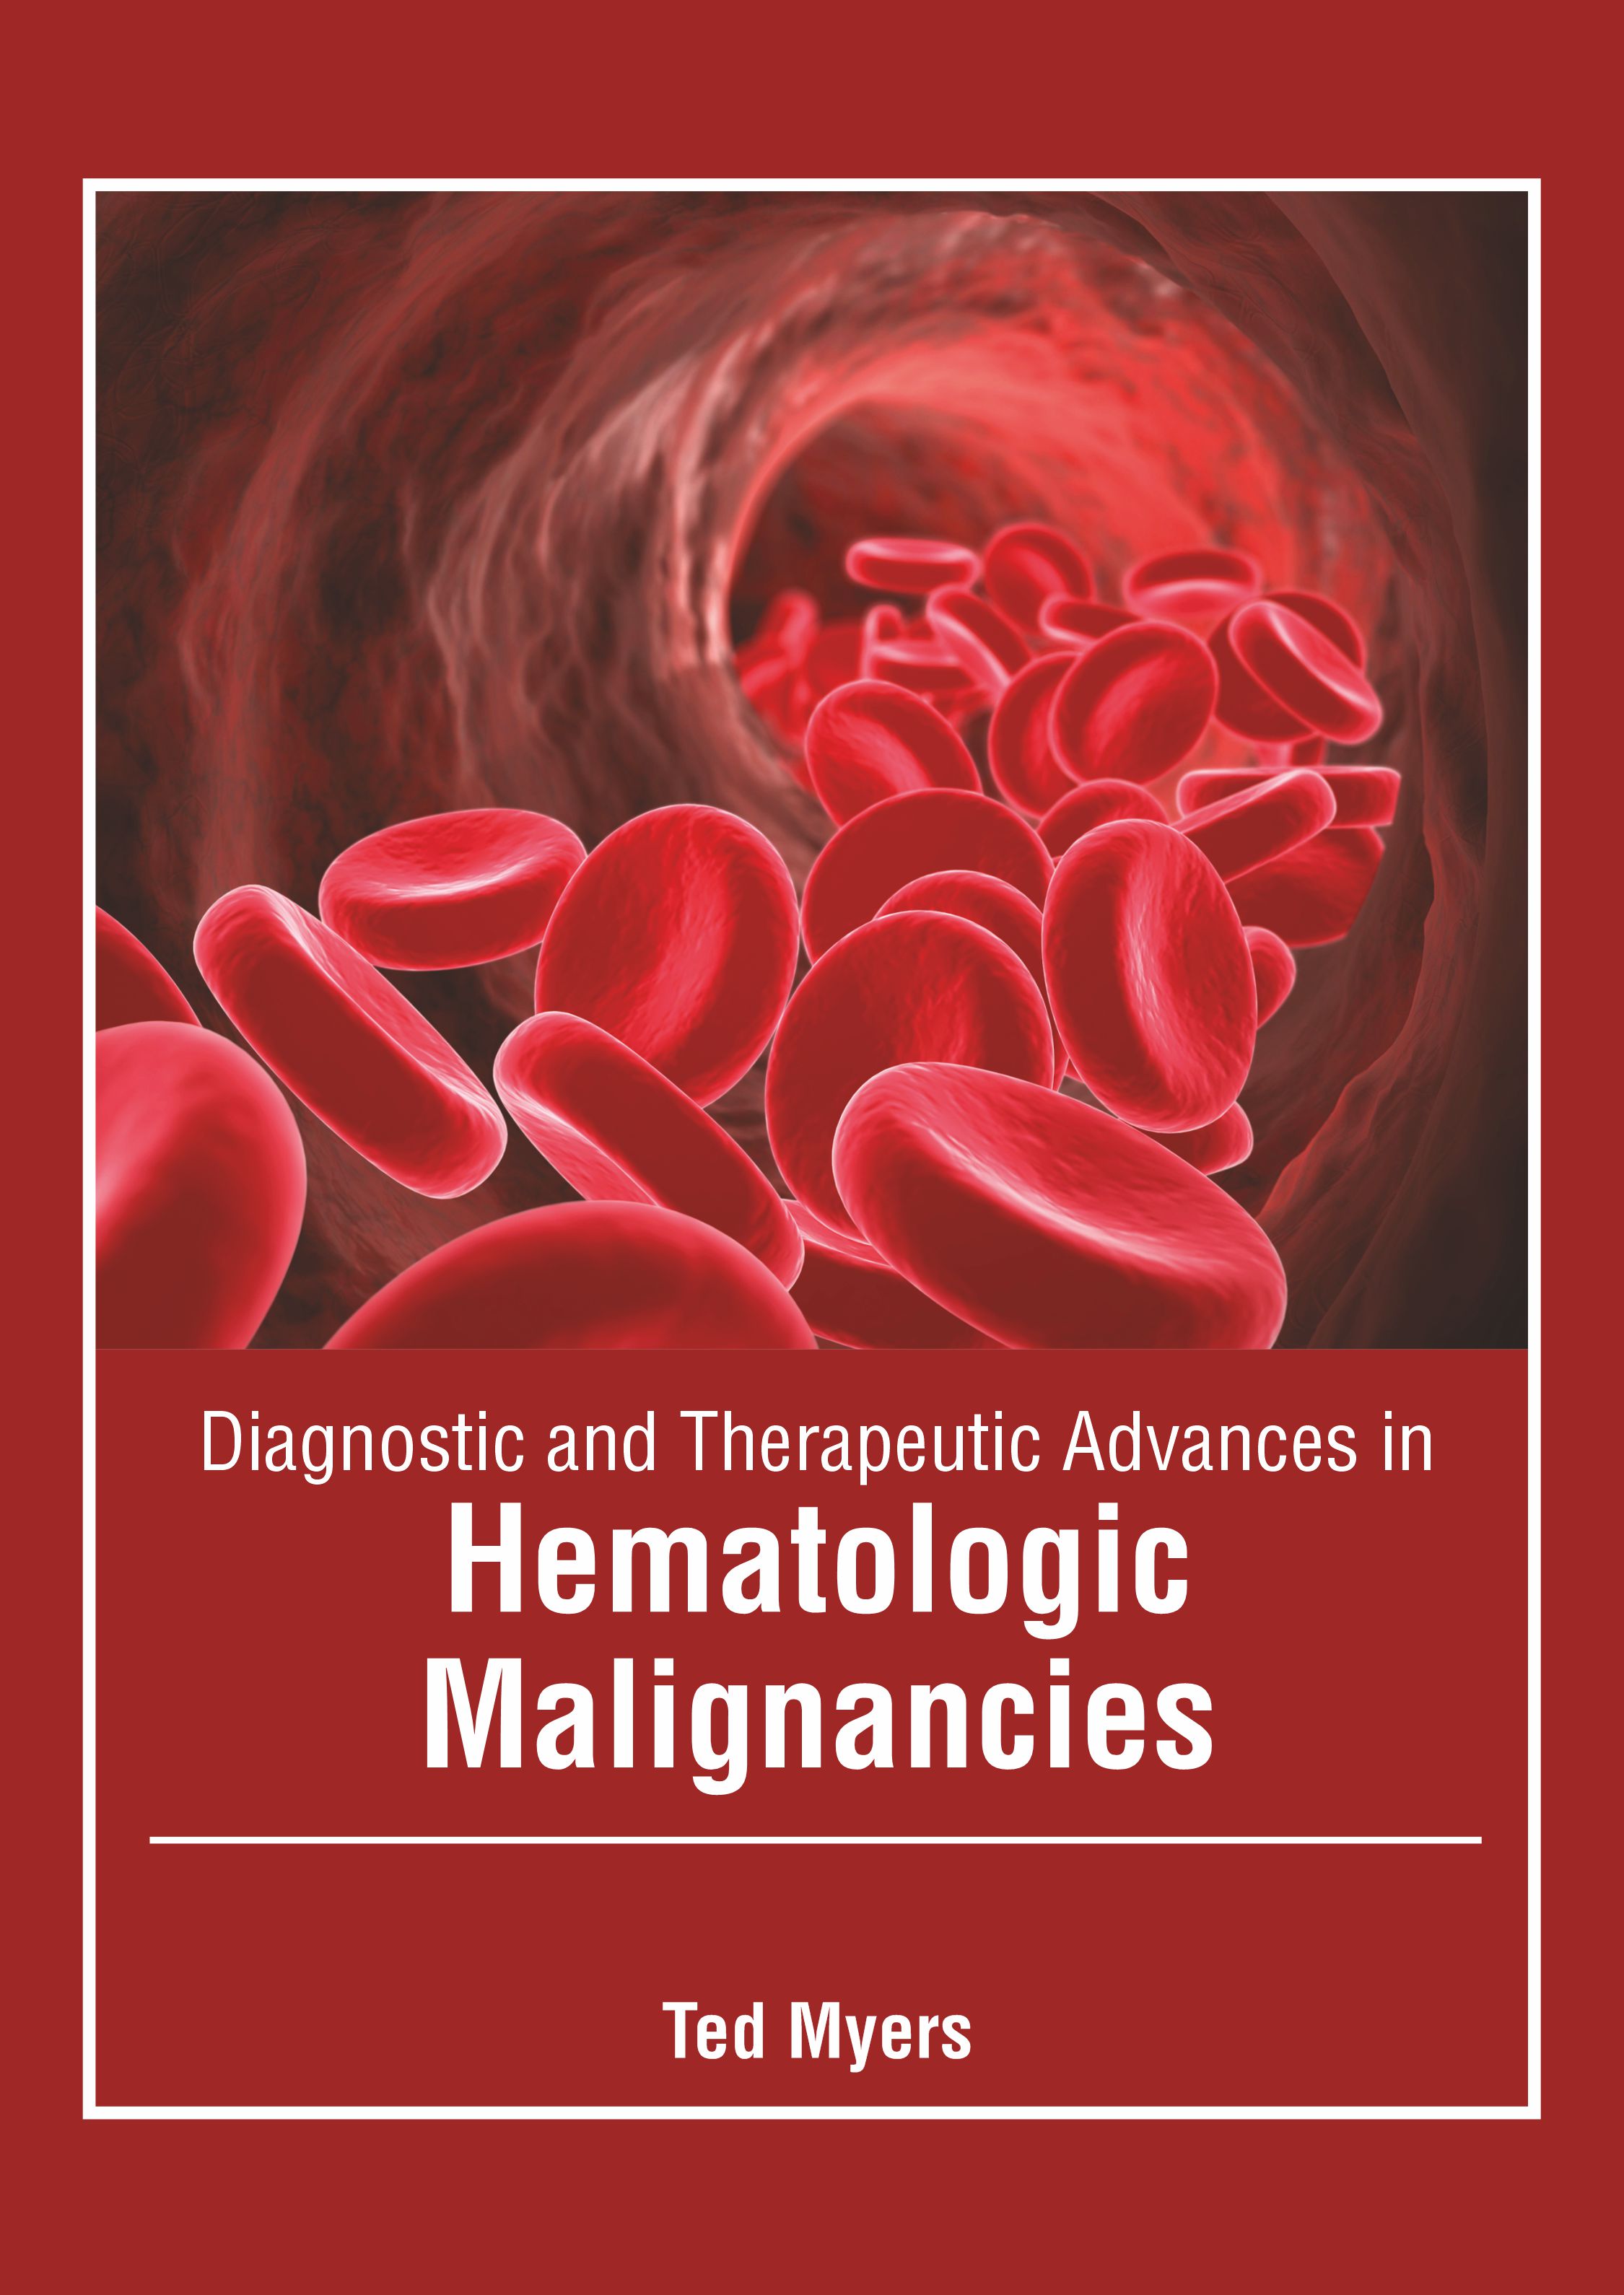 DIAGNOSTIC AND THERAPEUTIC ADVANCES IN HEMATOLOGIC MALIGNANCIES